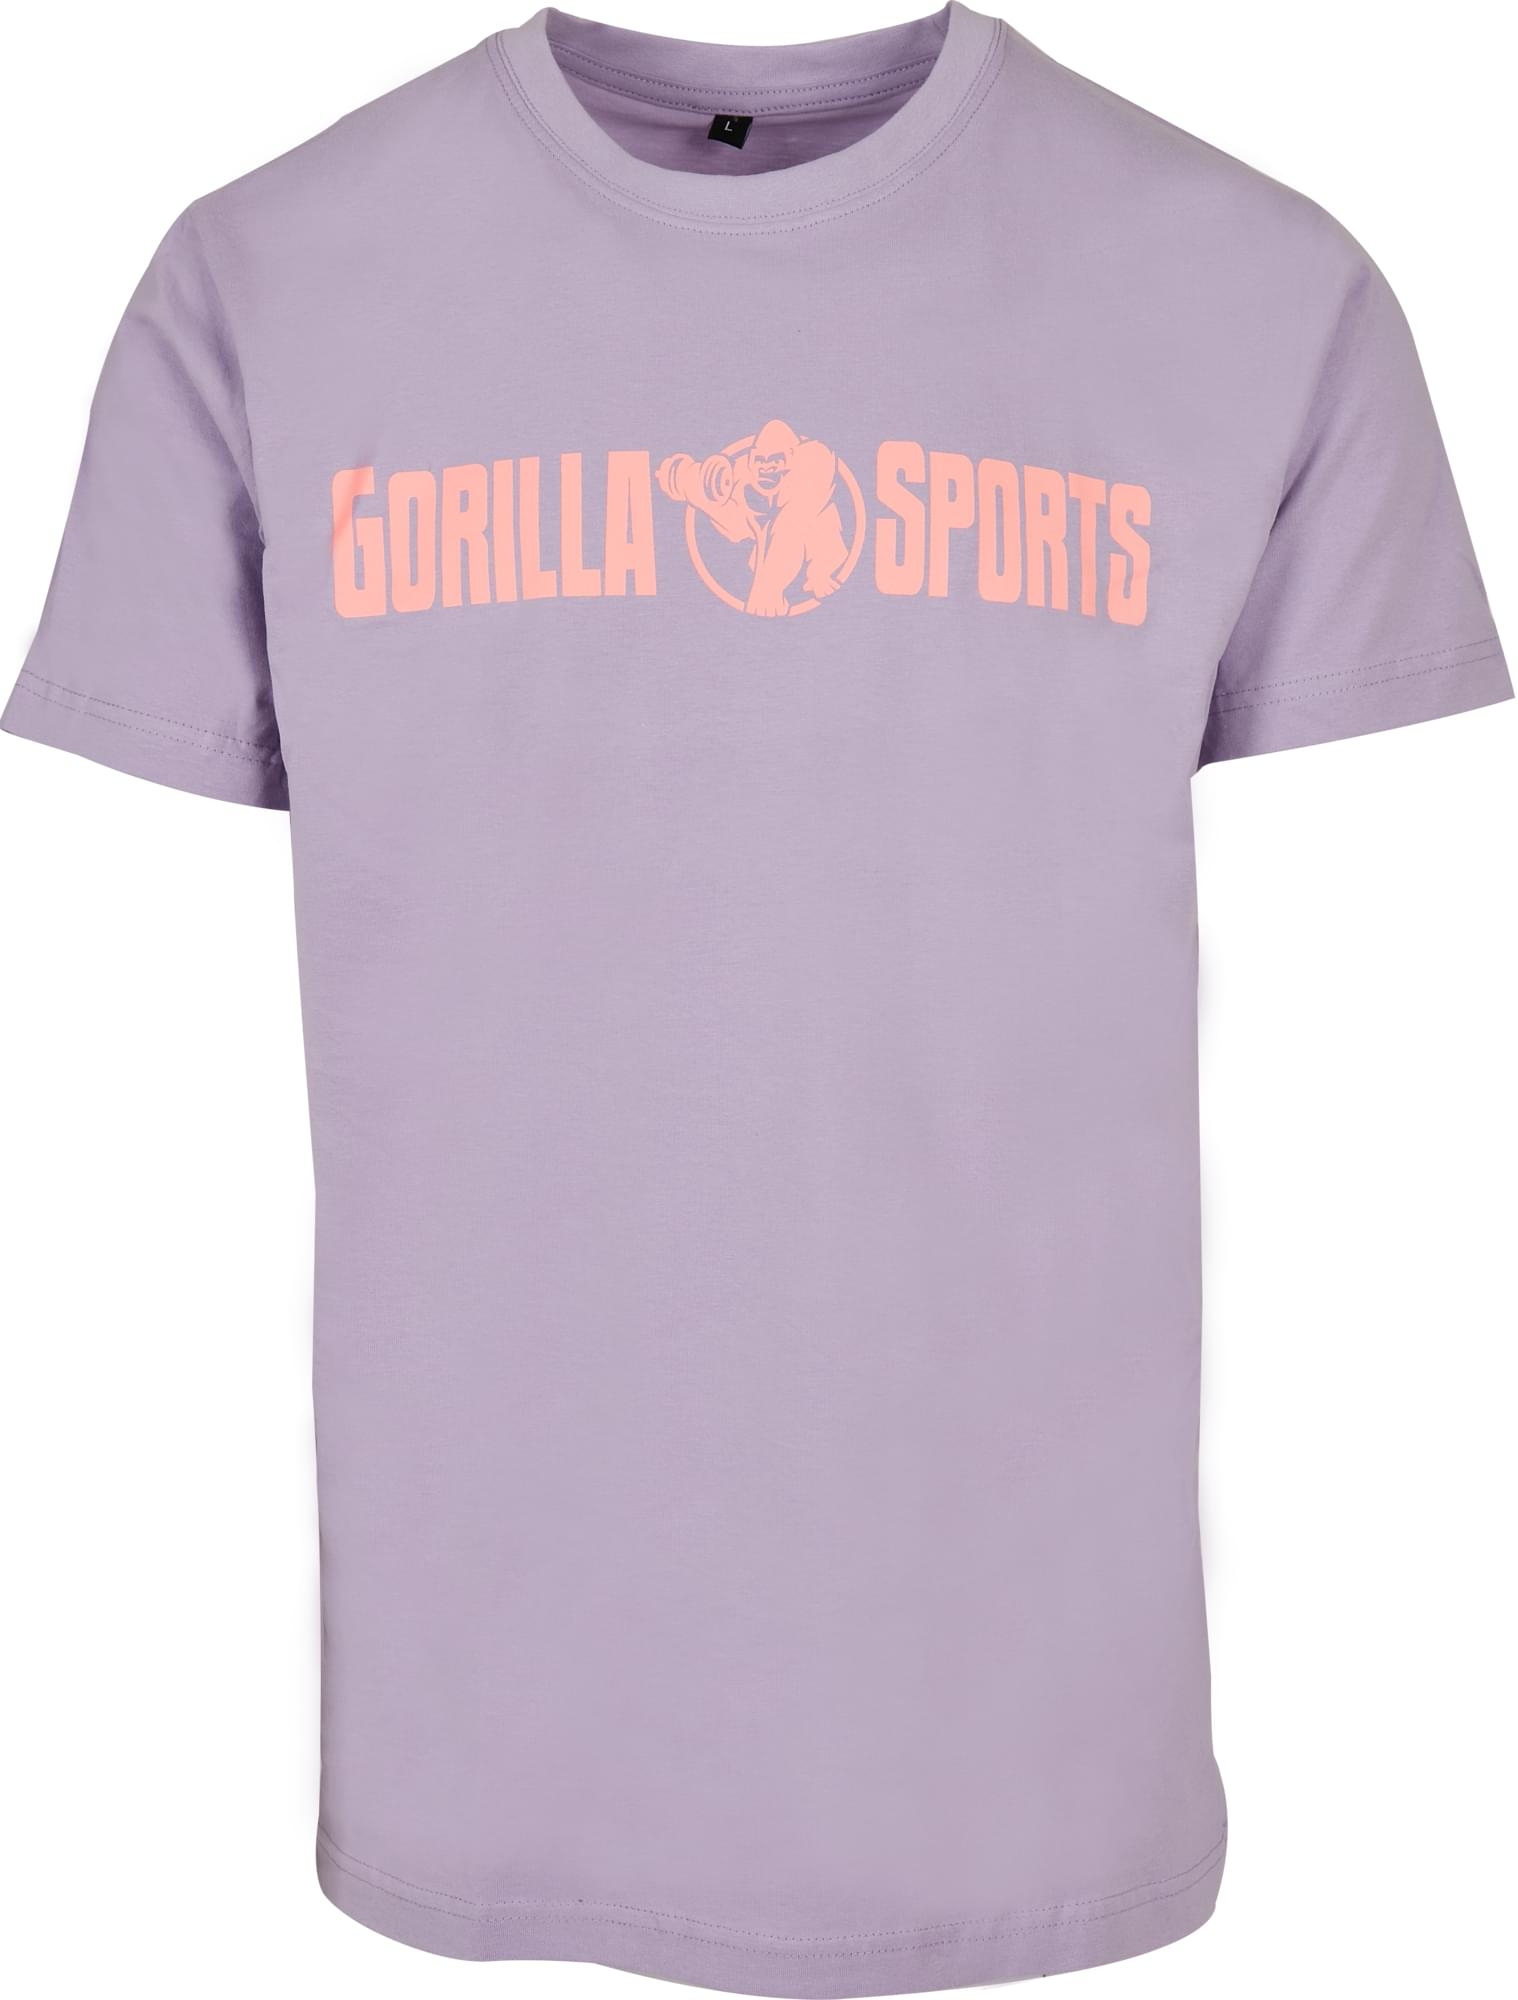 T-shirt Ã col rond - taille L - coloris violet/corail